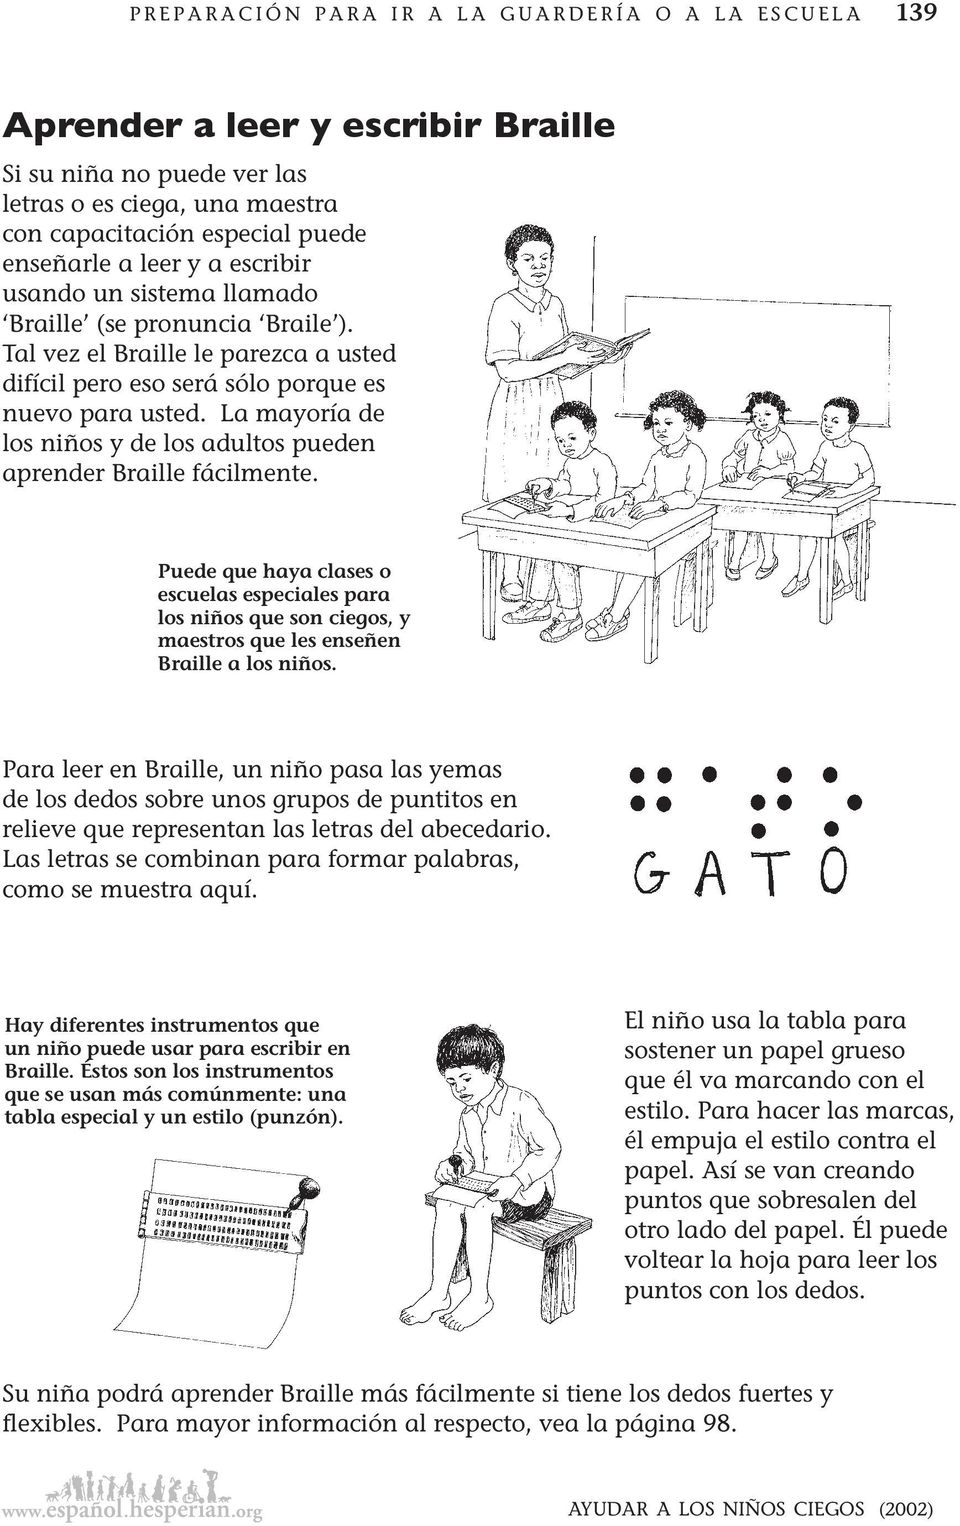 La mayoría de los niños y de los adultos pueden aprender Braille fácilmente. Puede que haya clases o escuelas especiales para los niños que son ciegos, y maestros que les enseñen Braille a los niños.